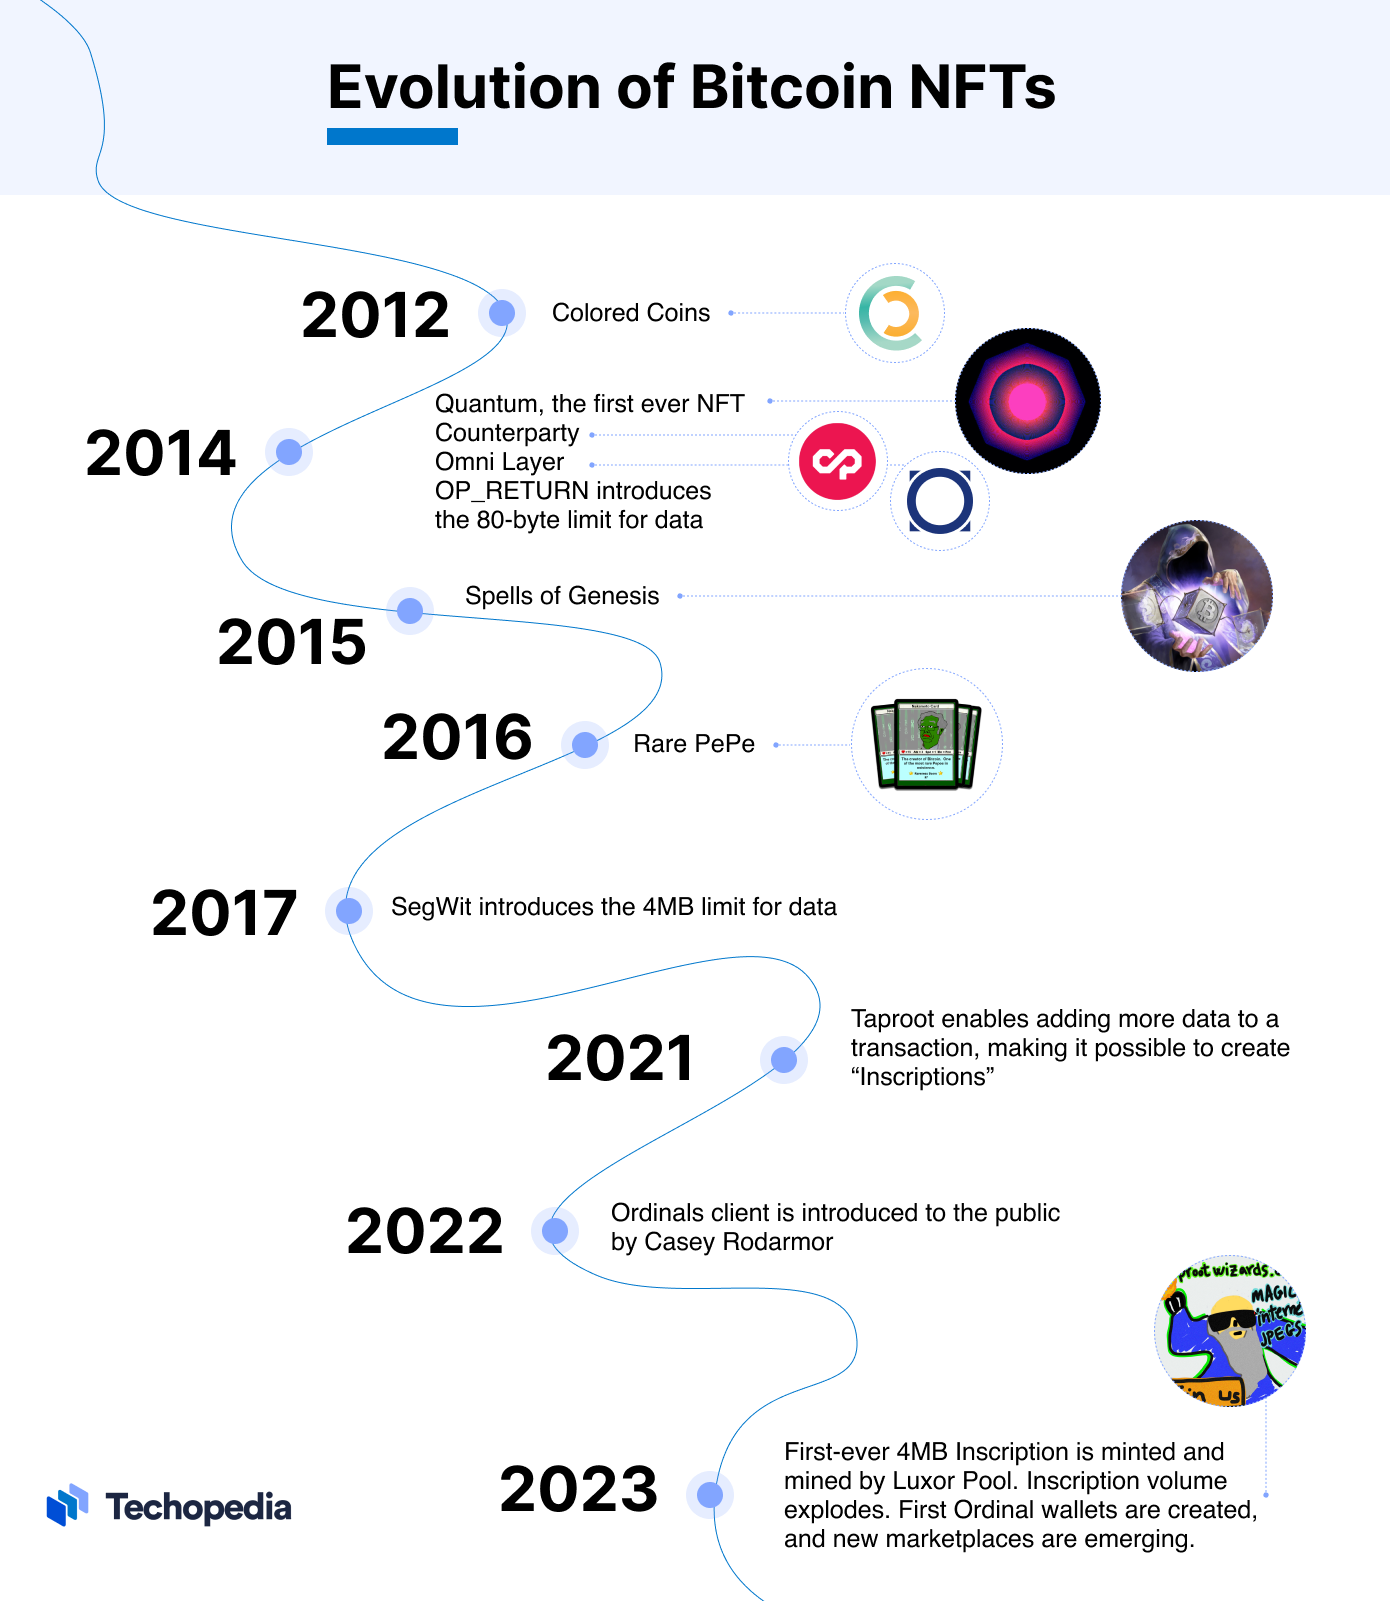 A chronology of Bitcoin NFT evolution